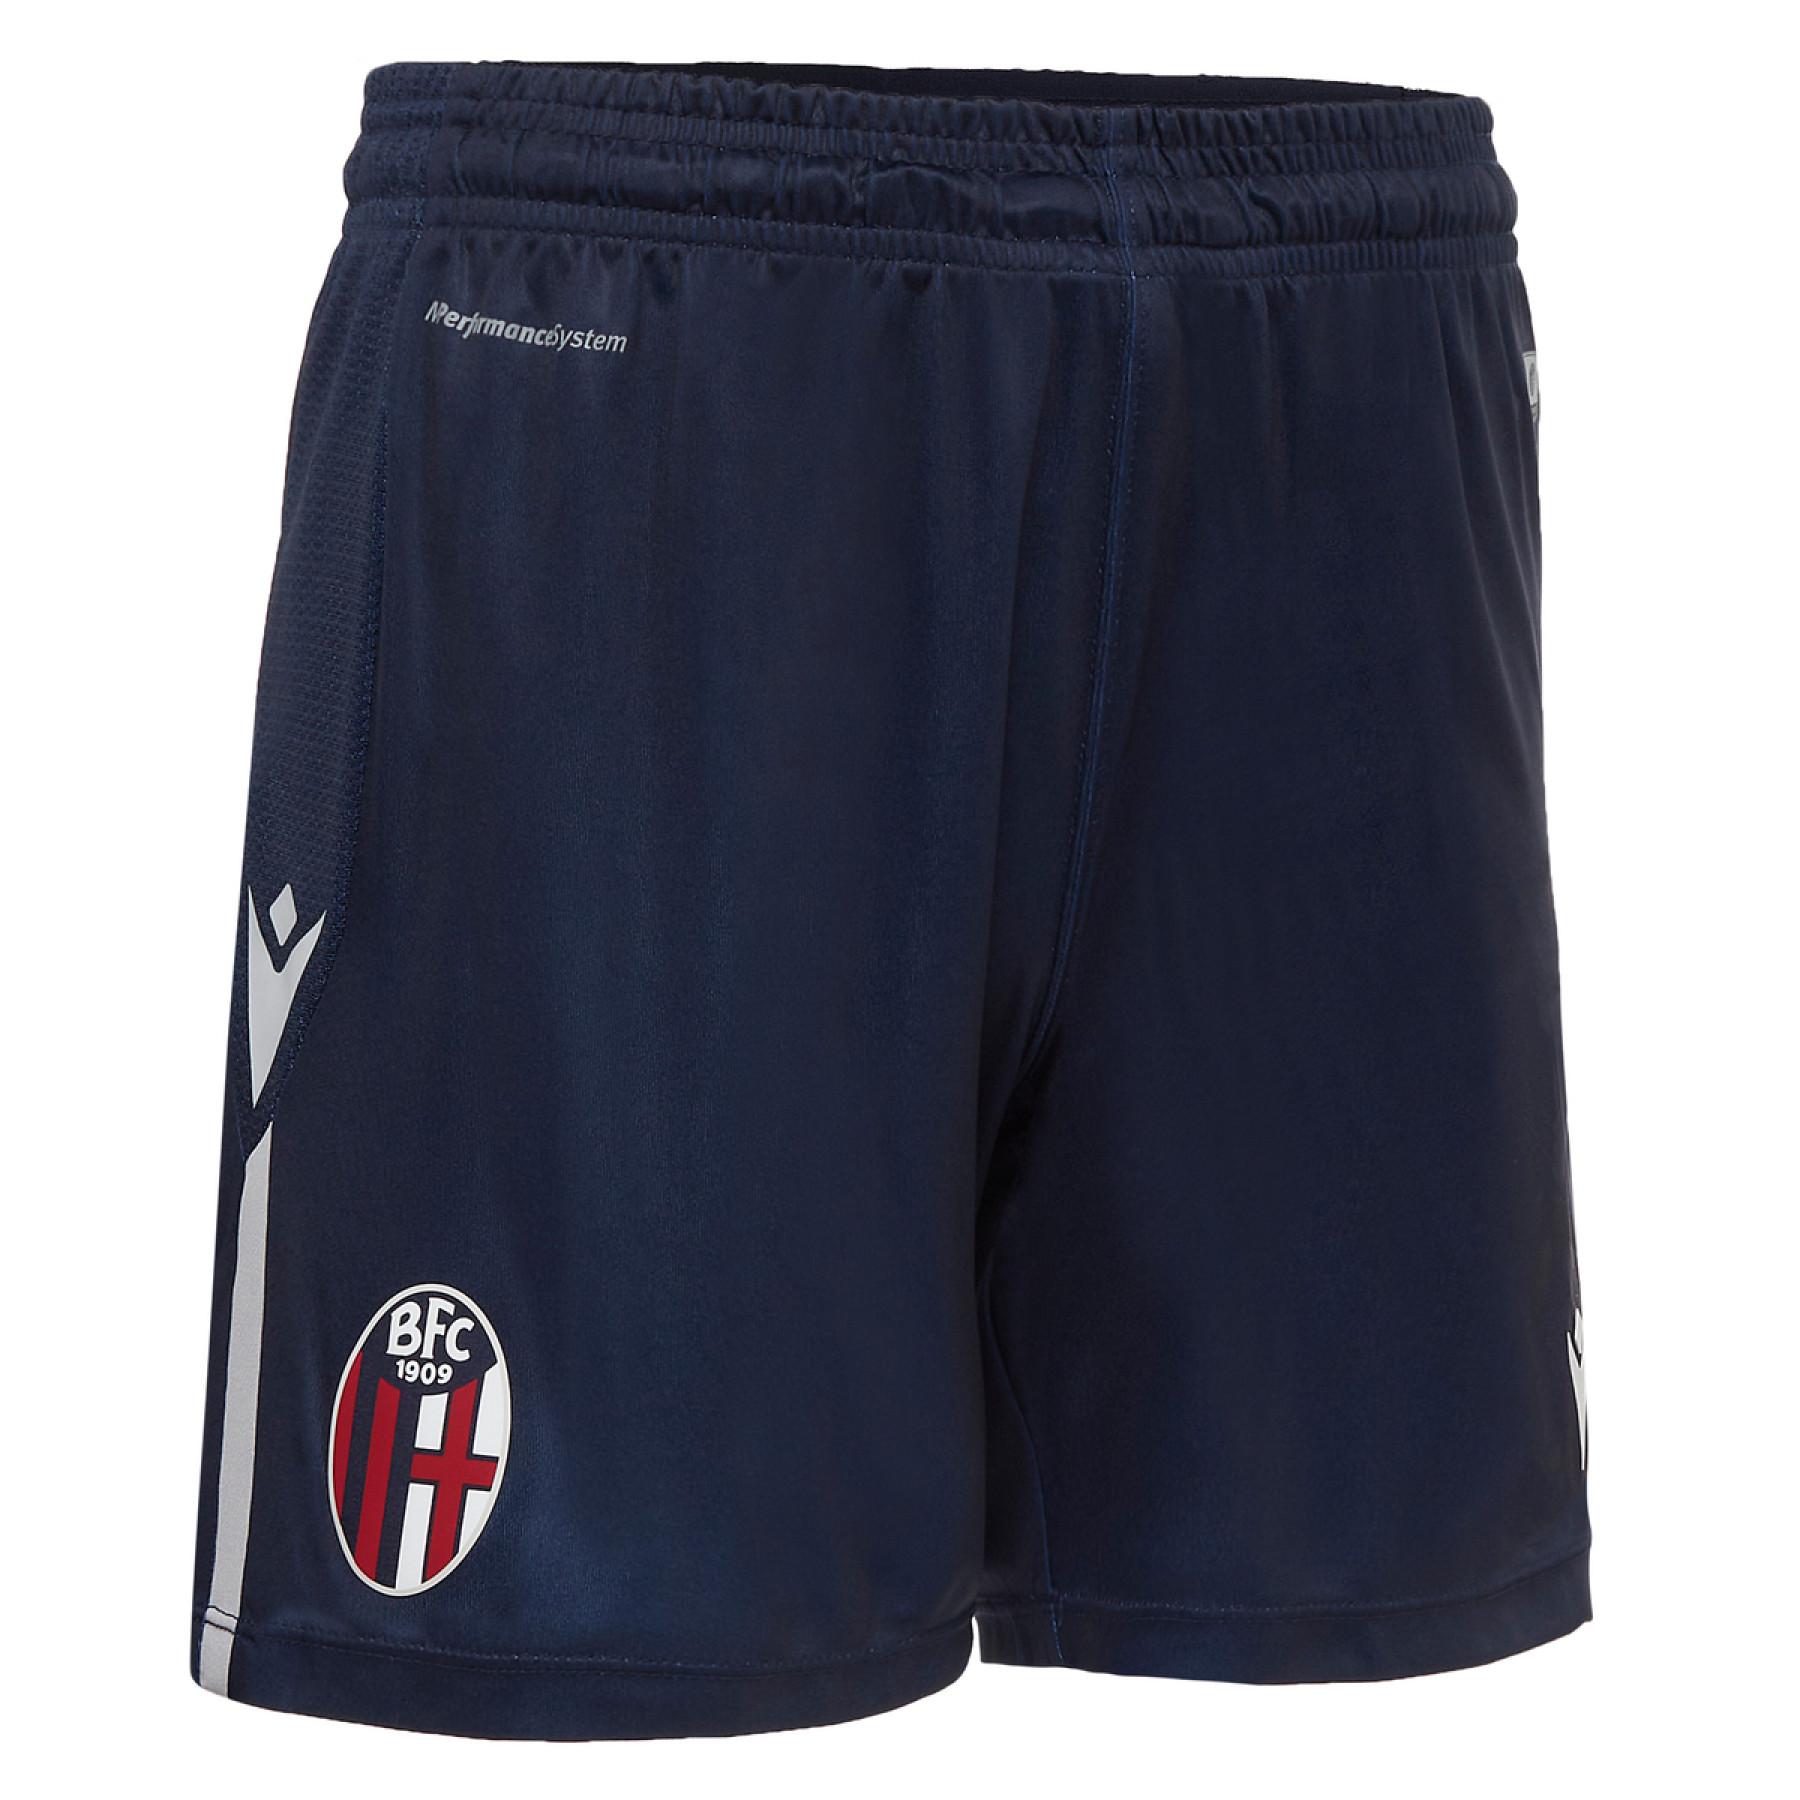 Pantalones cortos para niños en casa Bologne 2020/21